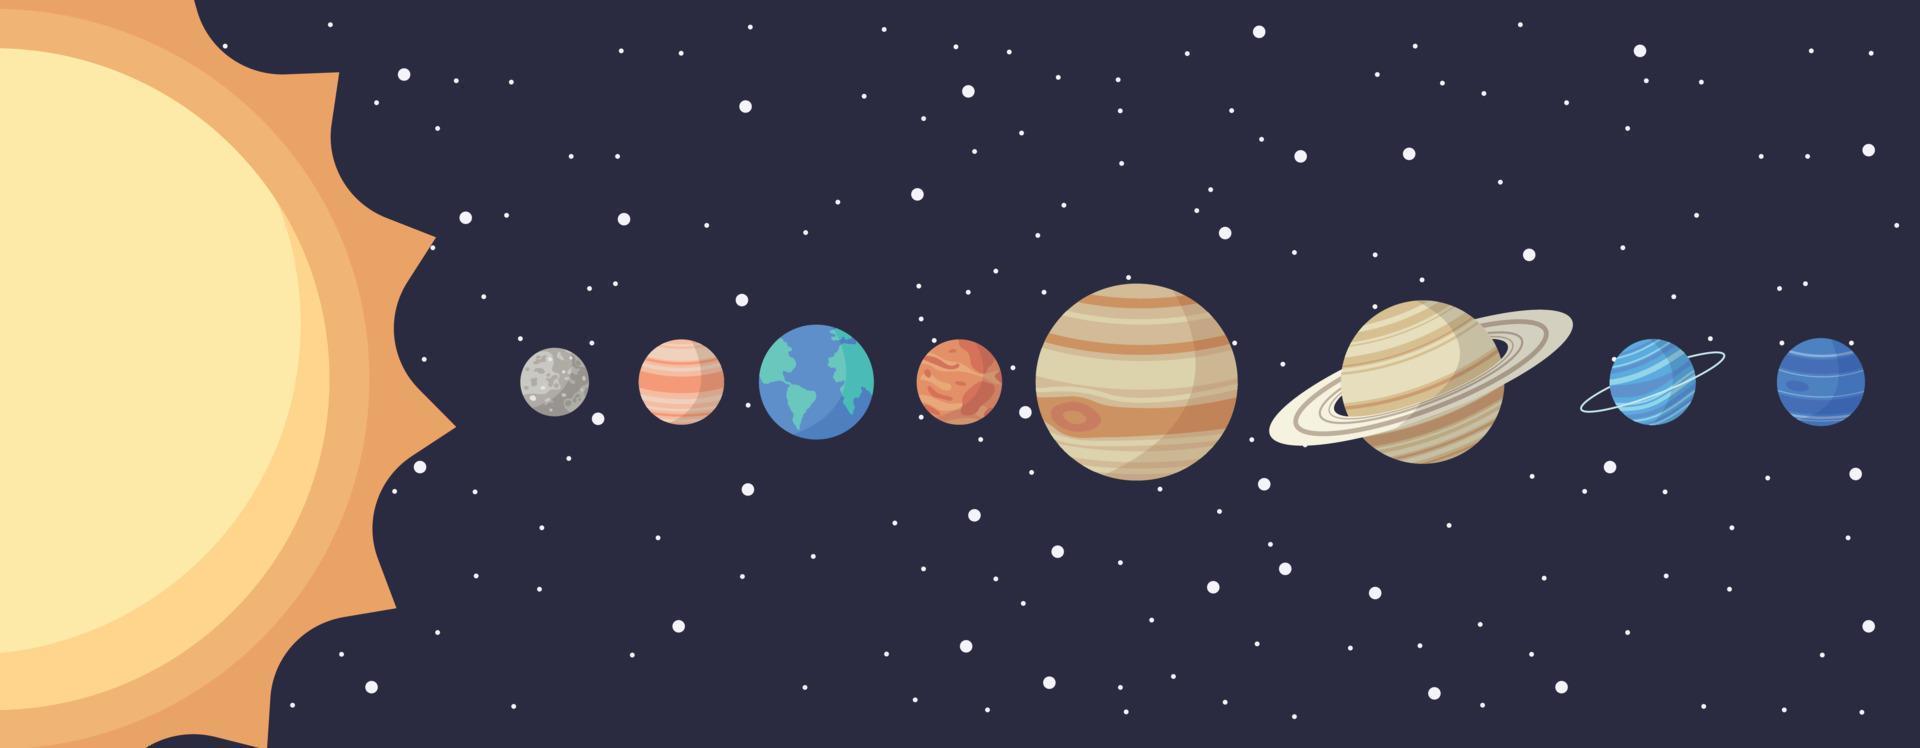 conjunto de planetas del sistema solar de dibujos animados. educación de los niños. ilustración vectorial de los planetas del sistema solar de dibujos animados en orden desde el sol. ilustración infográfica para educación escolar o exploración espacial vector